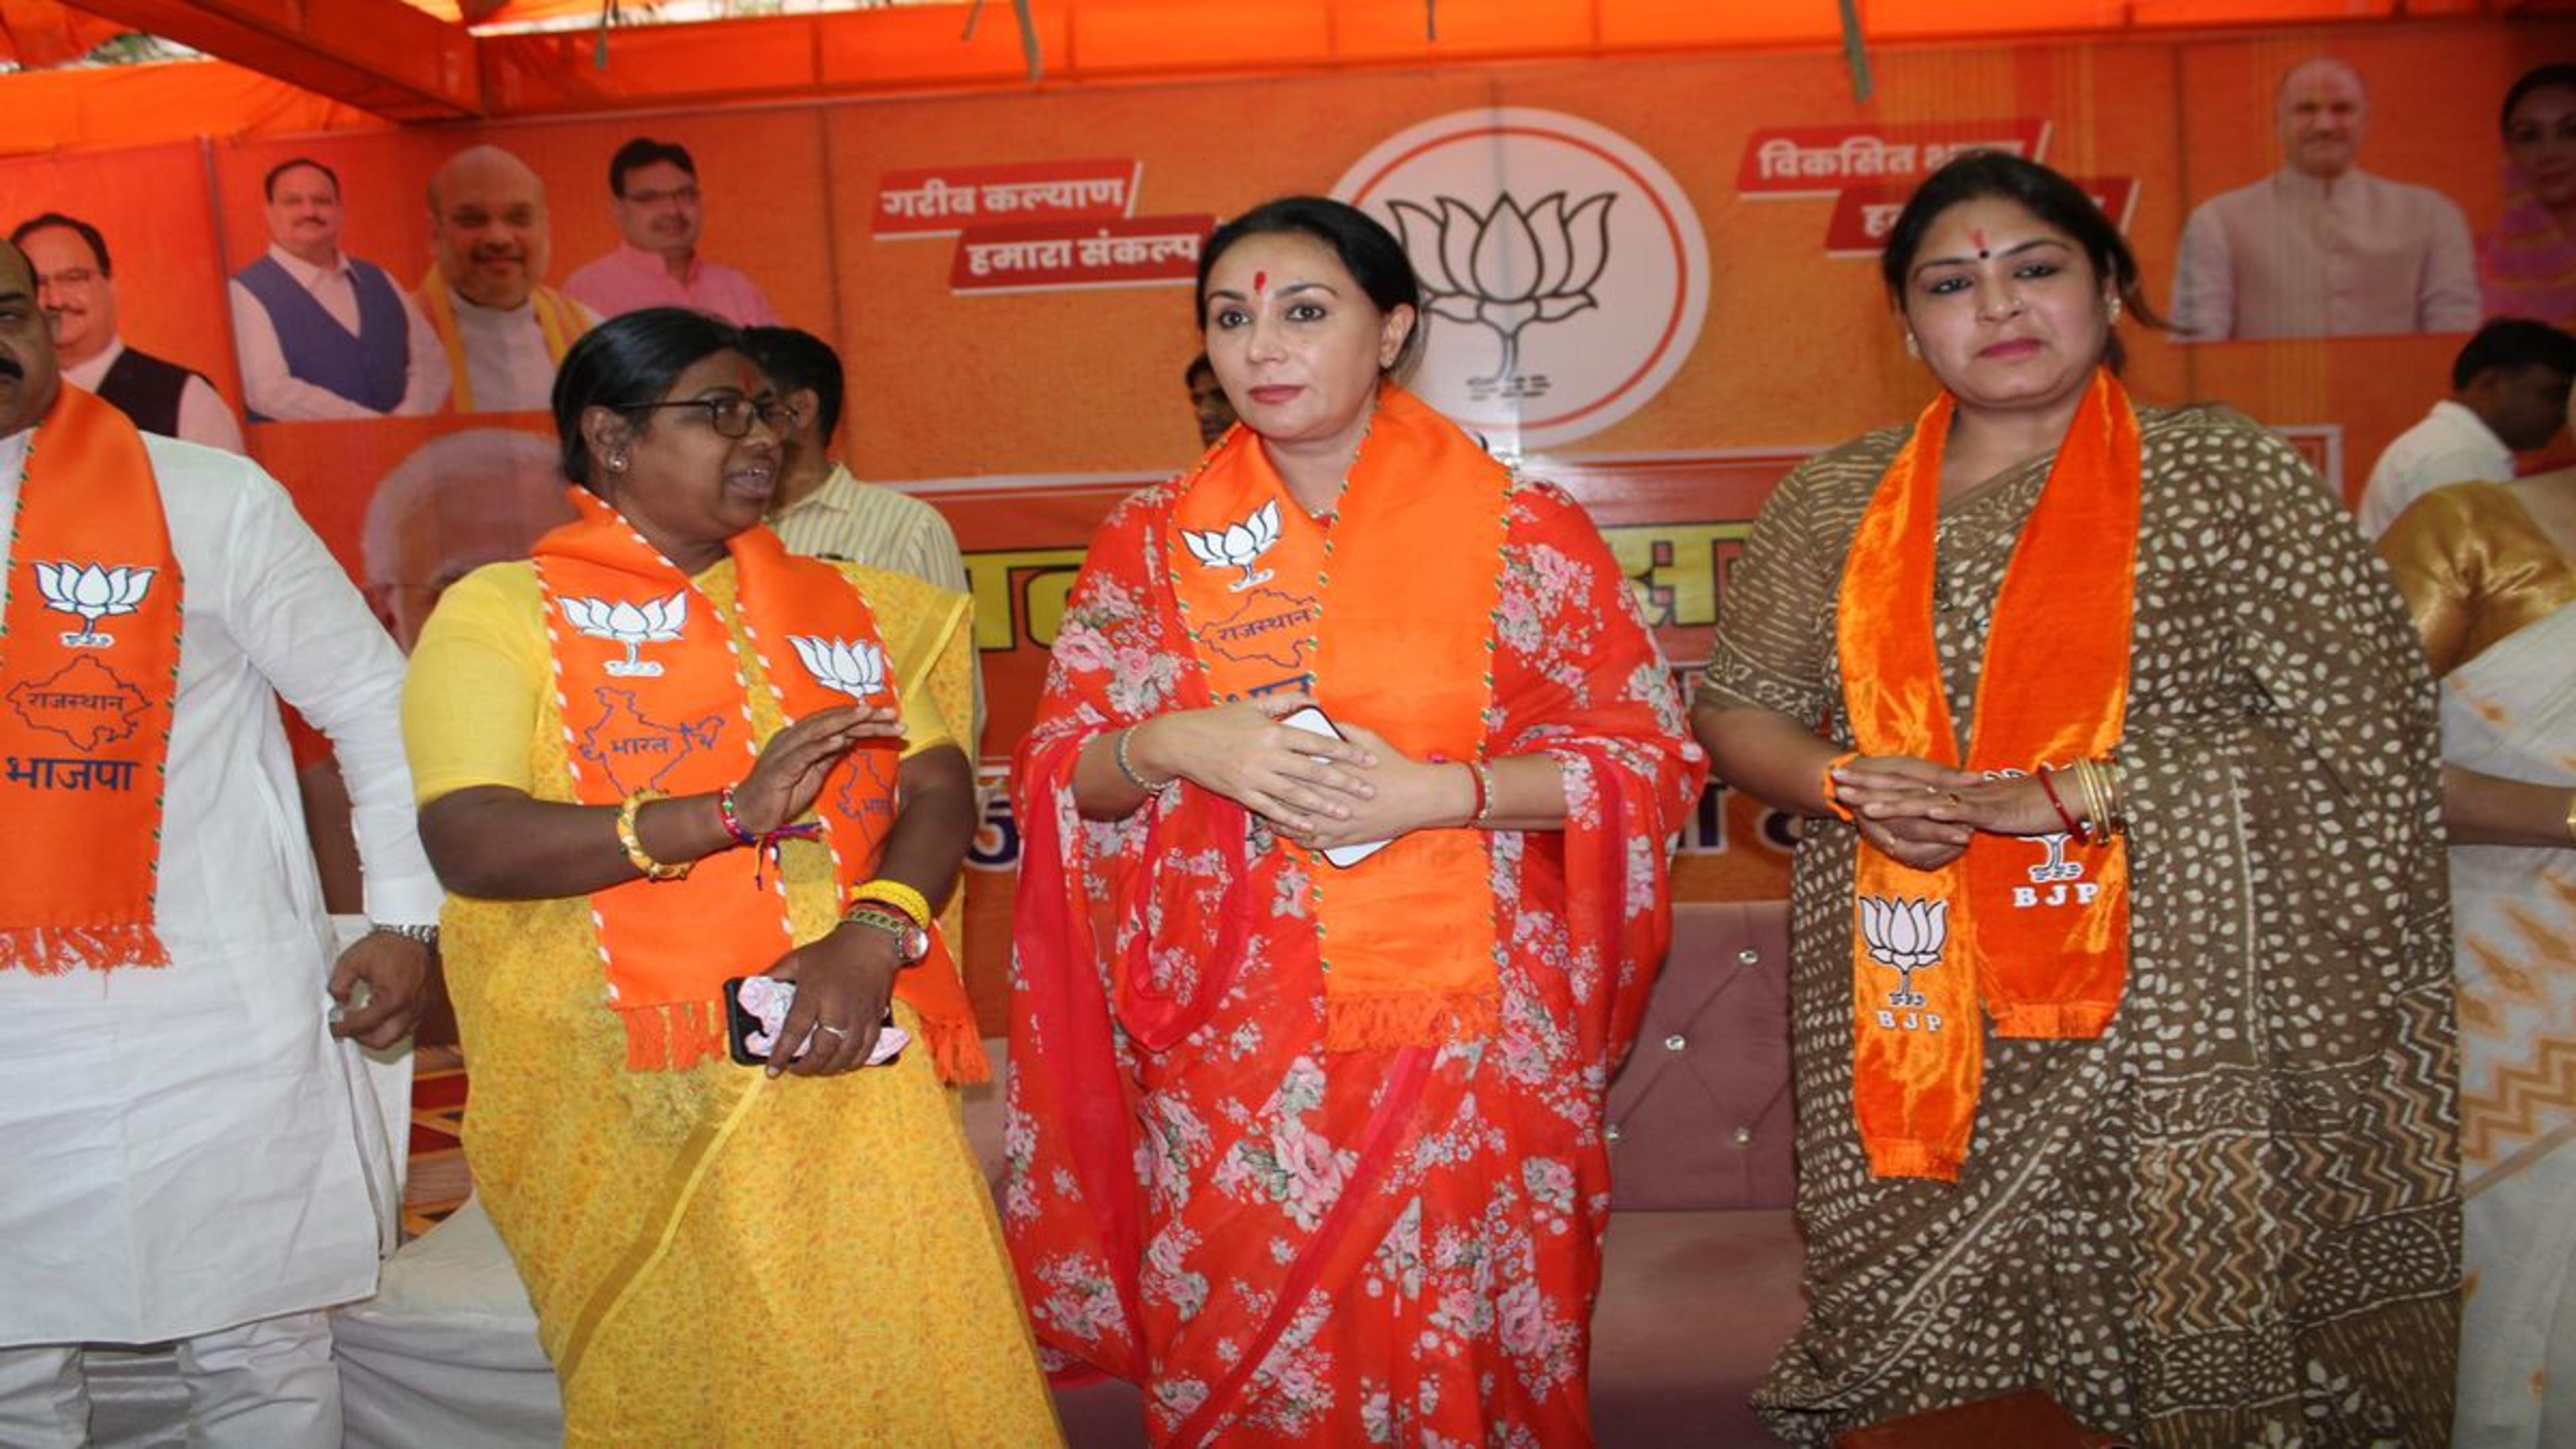 loksabha election 2024: बोली दिया कुमारी -पीएम मोदी ने समझी माताओं व बहनों की
पीड़ा’